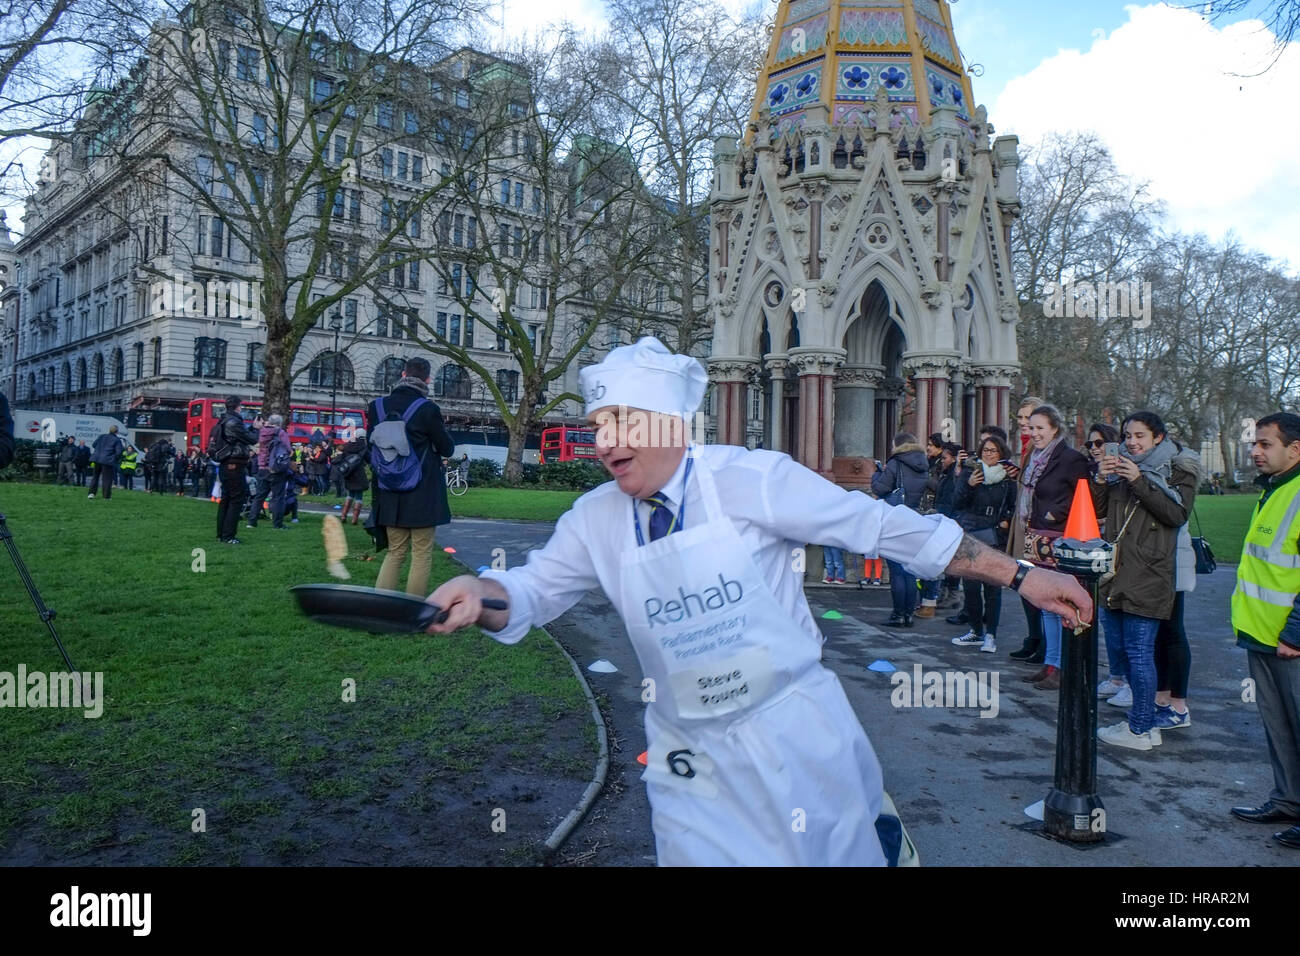 Londres, Reino Unido. 28 Feb, 2017. Pancake carrera entre MP's, los señores y los medios de comunicación para recaudar fondos para la rehabilitación de una caridad que ayudan a personas con discapacidades físicas y mentales. Crédito: Claire doherty/Alamy Live News Foto de stock